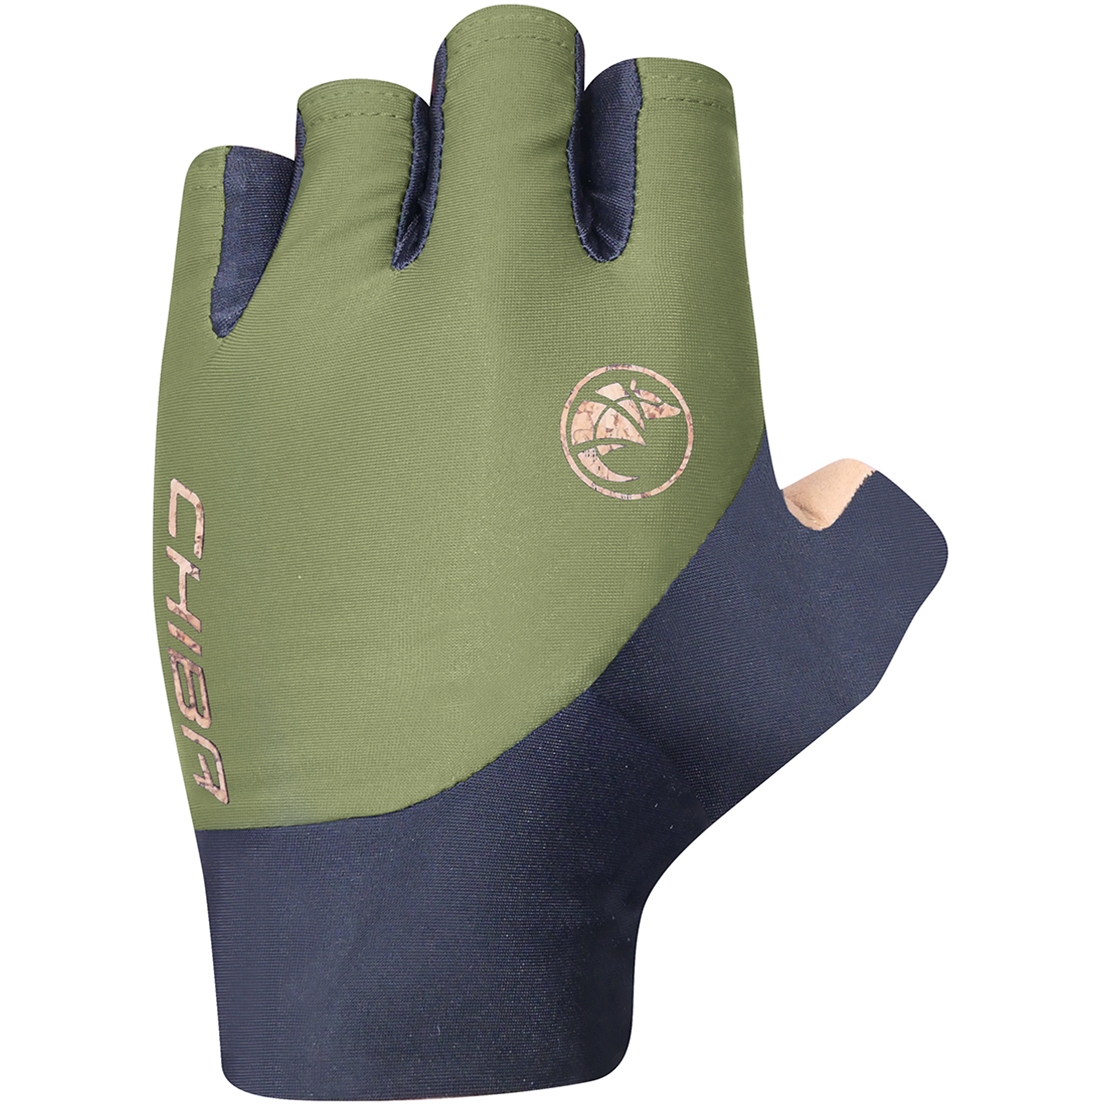 Produktbild von Chiba BioXCell ECO Pro Kurzfinger-Handschuhe - olive